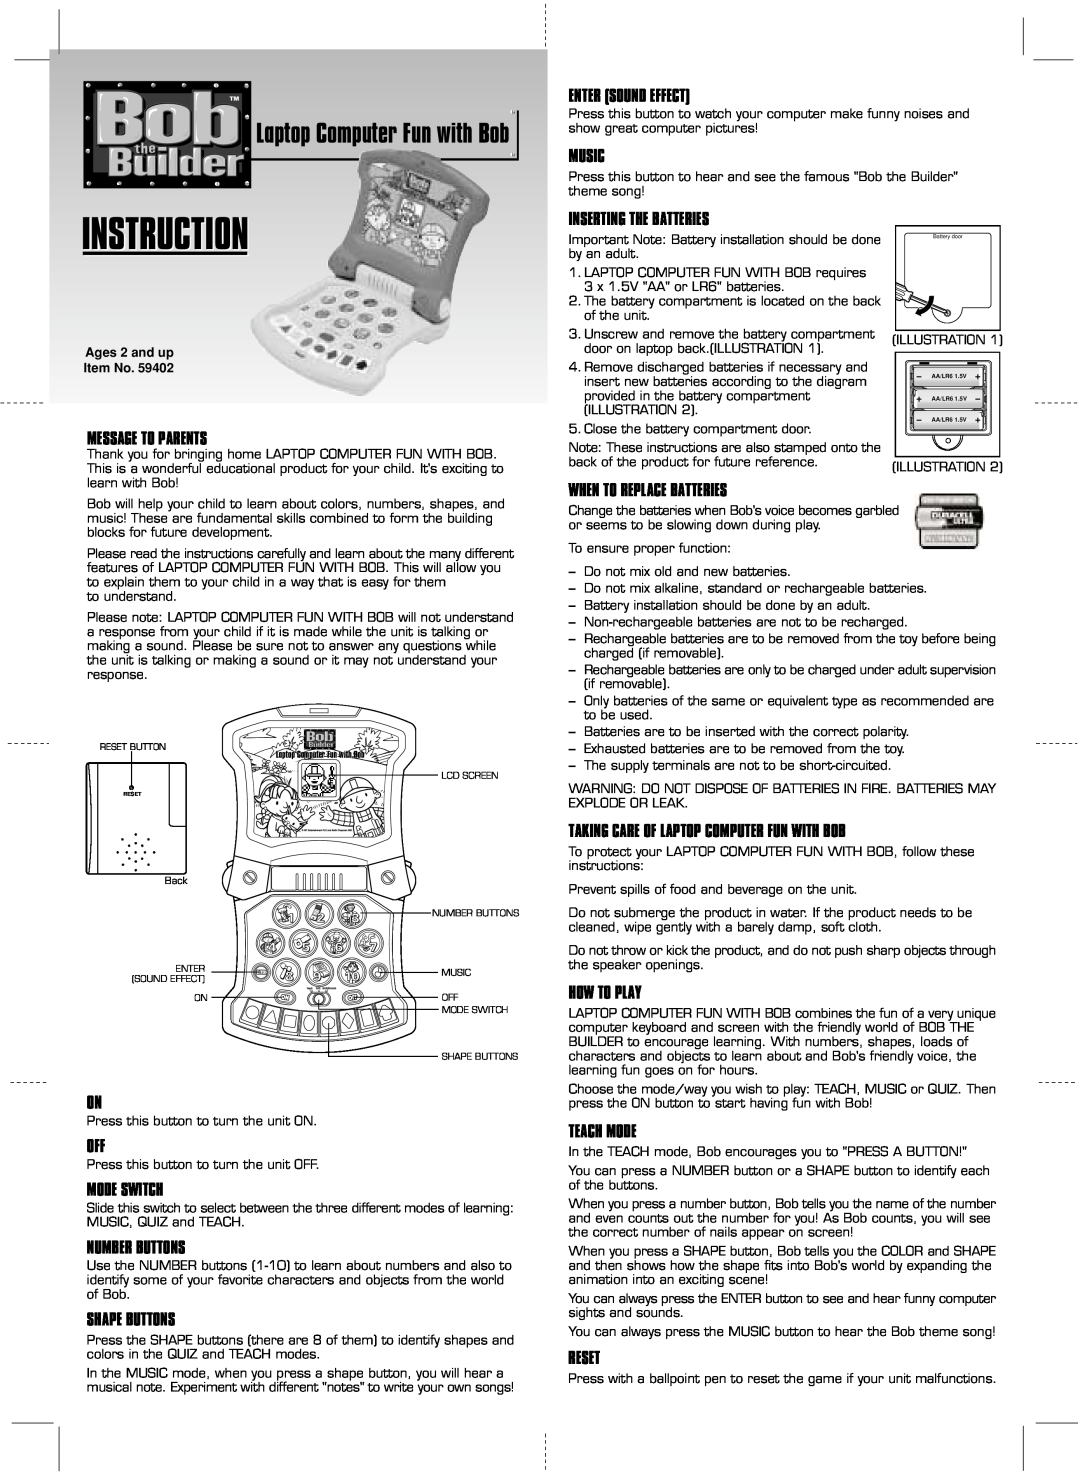 Hasbro Laptop Computer Fun with Bob manual Instruction 